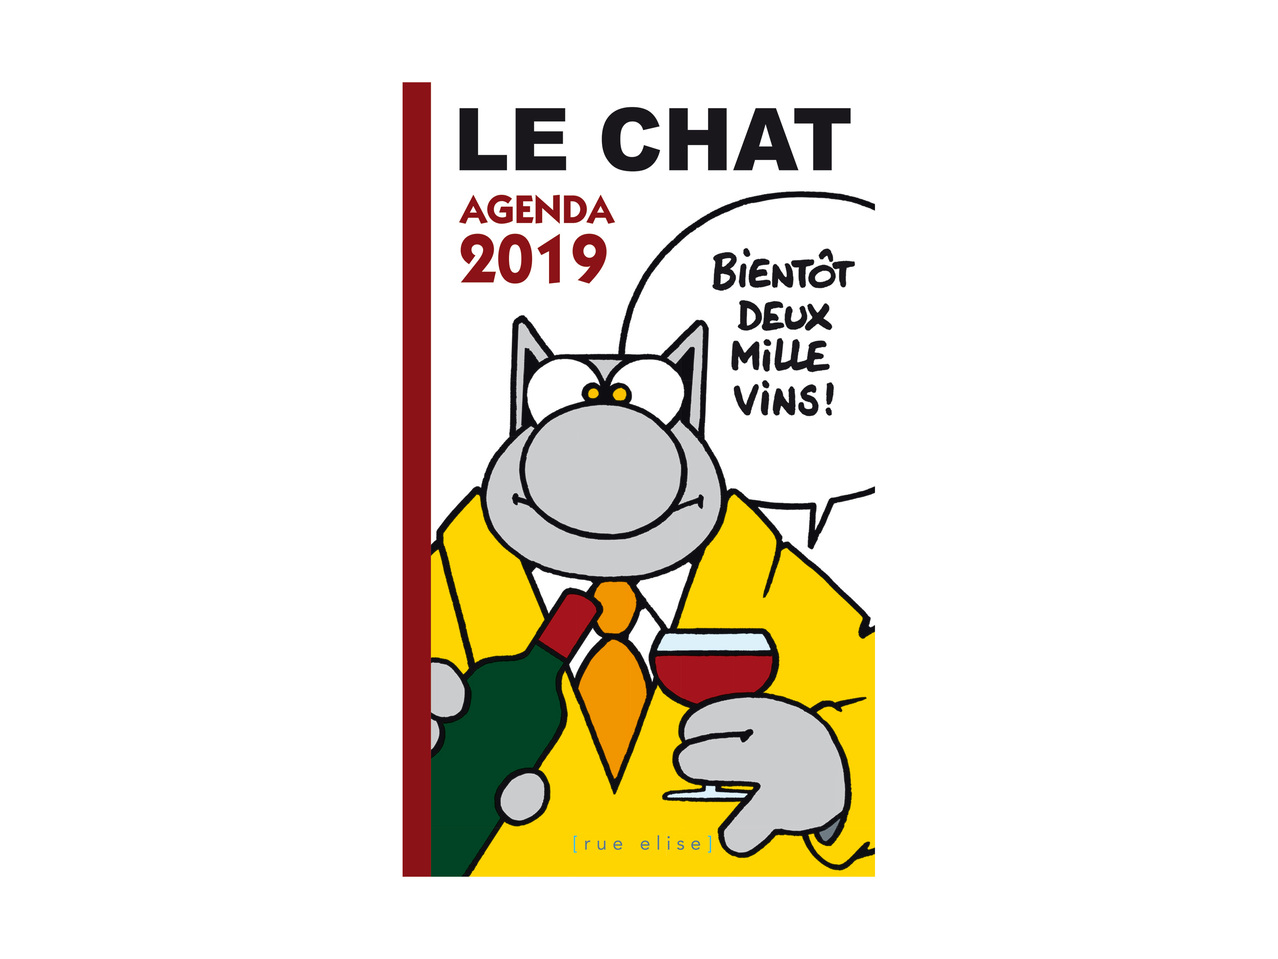 Agenda 2019 " Le Chat "